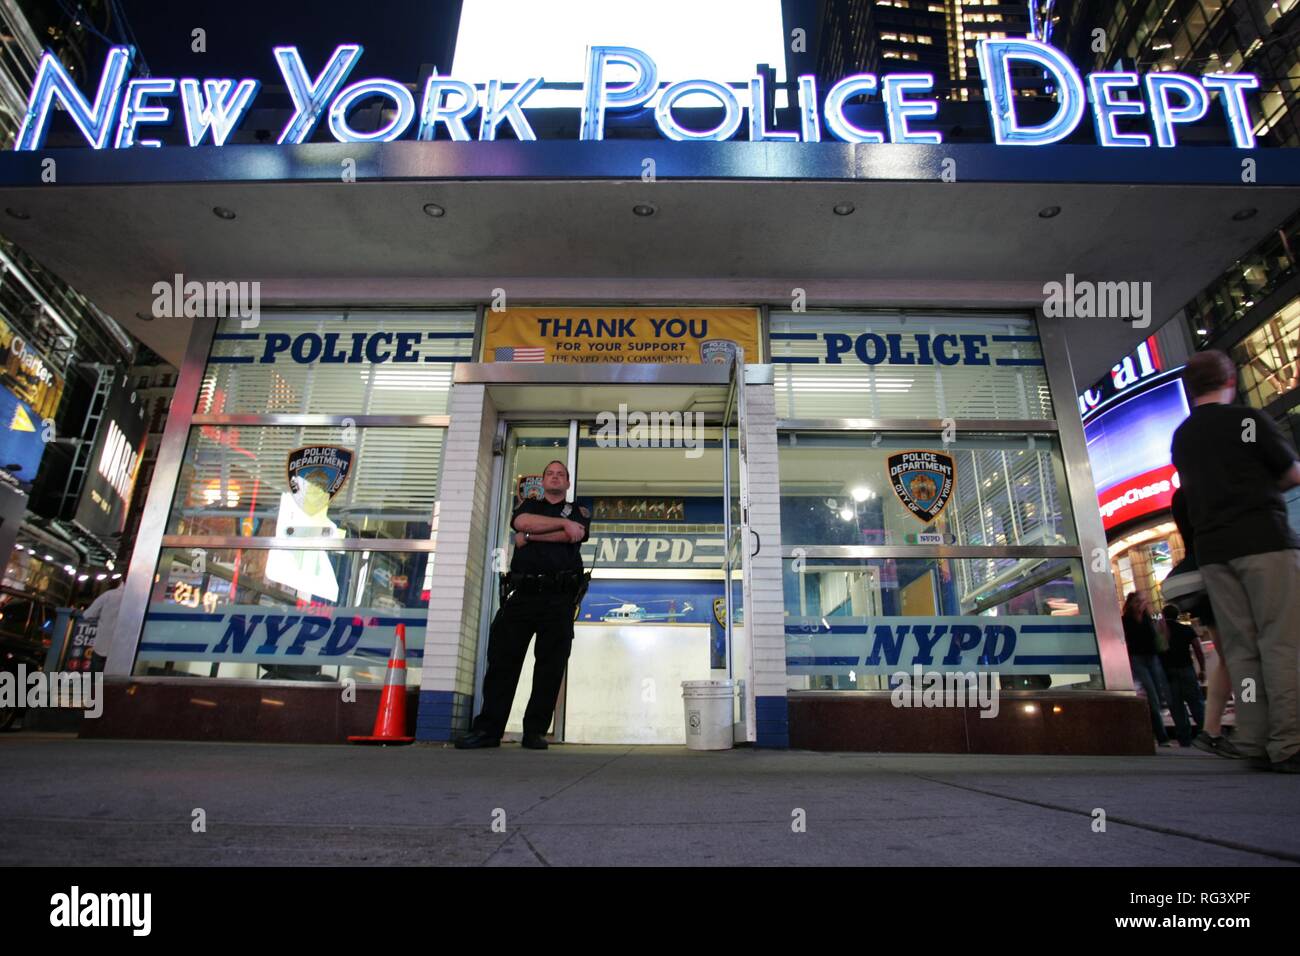 Stati Uniti d'America, Stati Uniti d'America, il New York Times Square. Stazione di polizia. Foto Stock